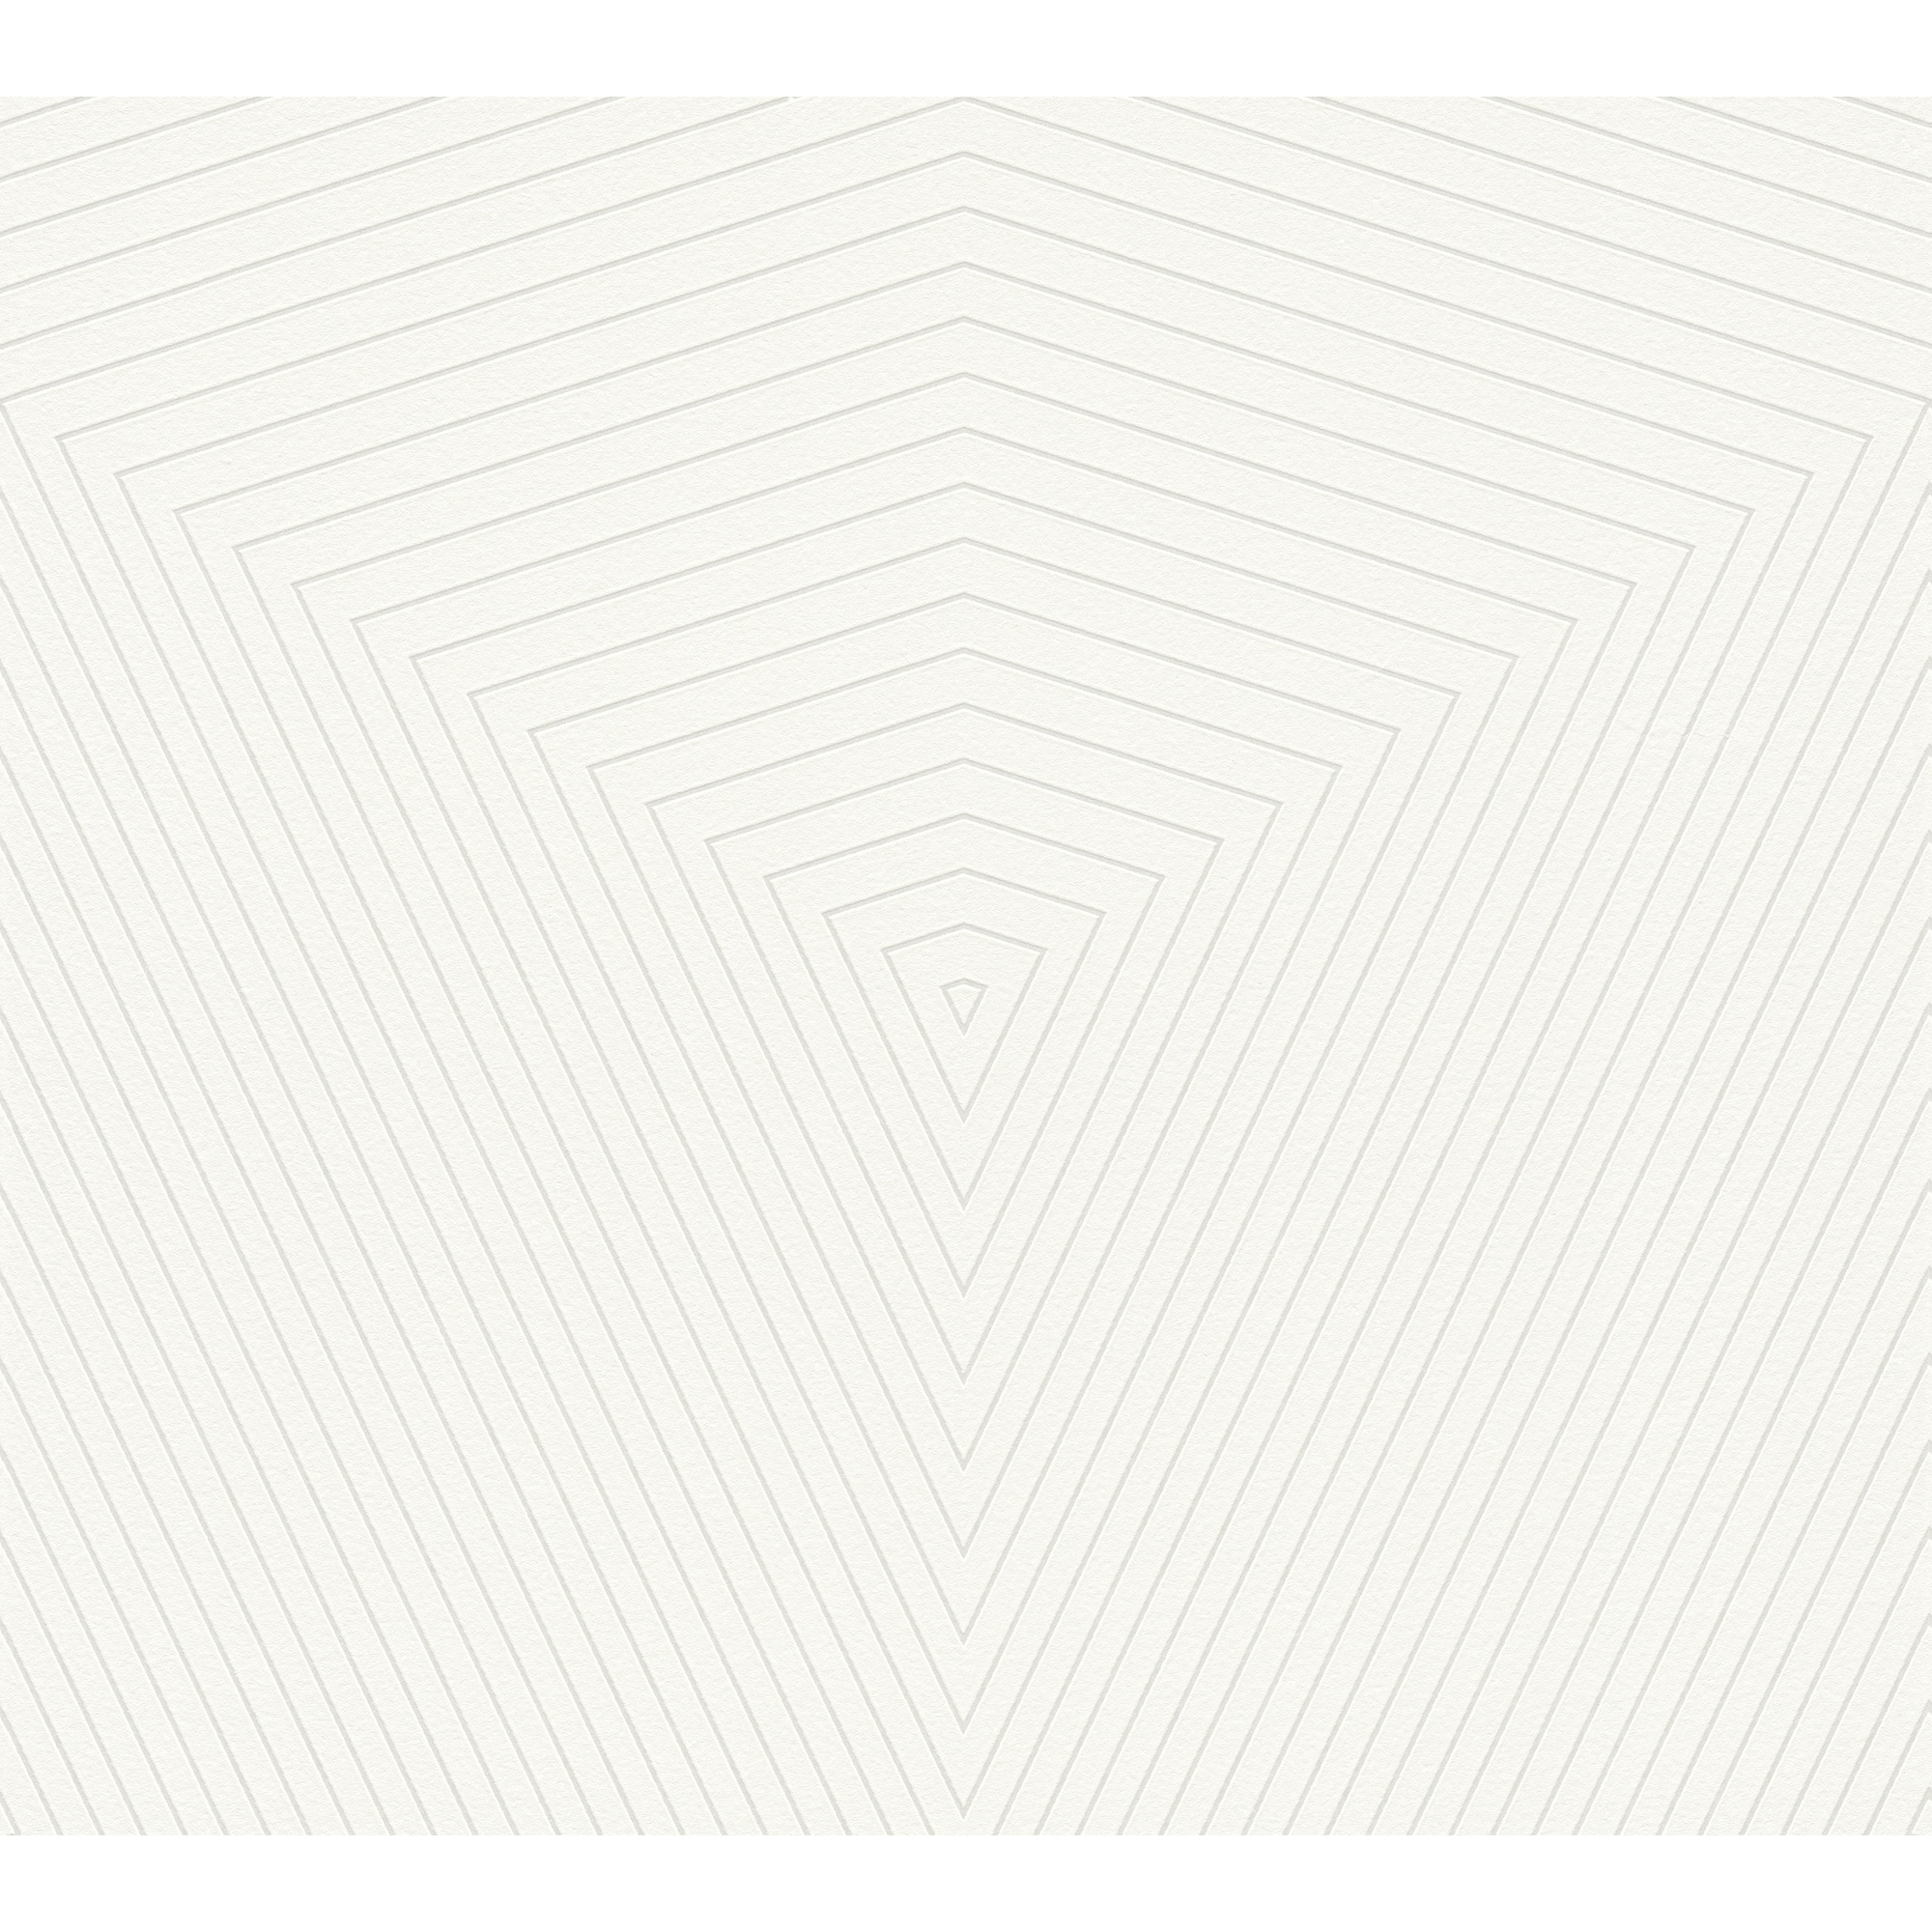 Vliestapete 'Daniel Hechter 6' Rauten creme/weiß 53 x 1005 cm + product picture